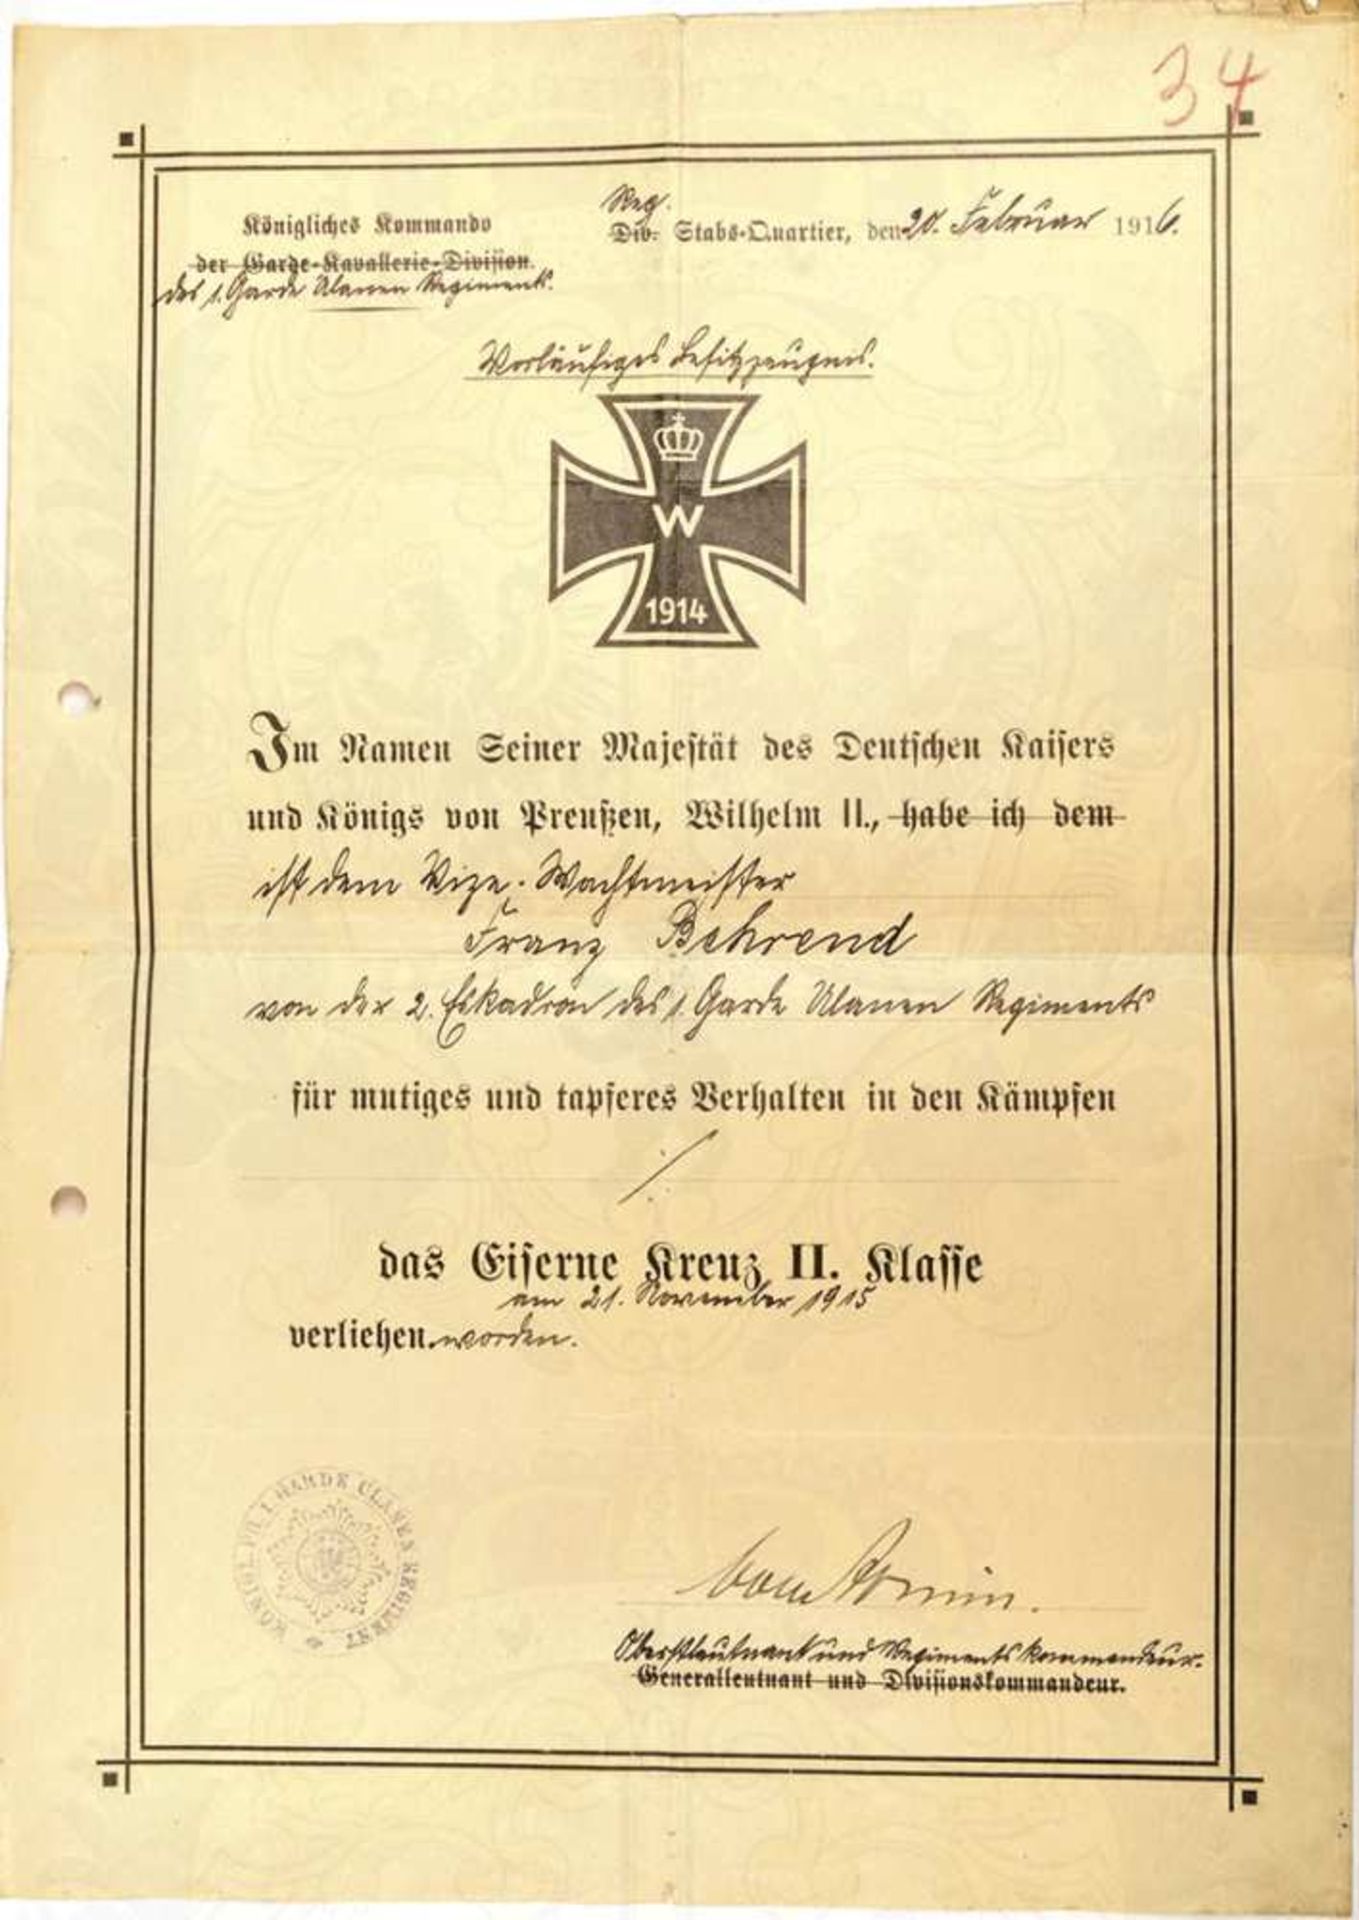 VORLÄUFIGES BESITZZEUGNIS EK II 1914, Vordruck d. Kgl. Kdos. d. Garde-Kavallerie-Division, f. e.